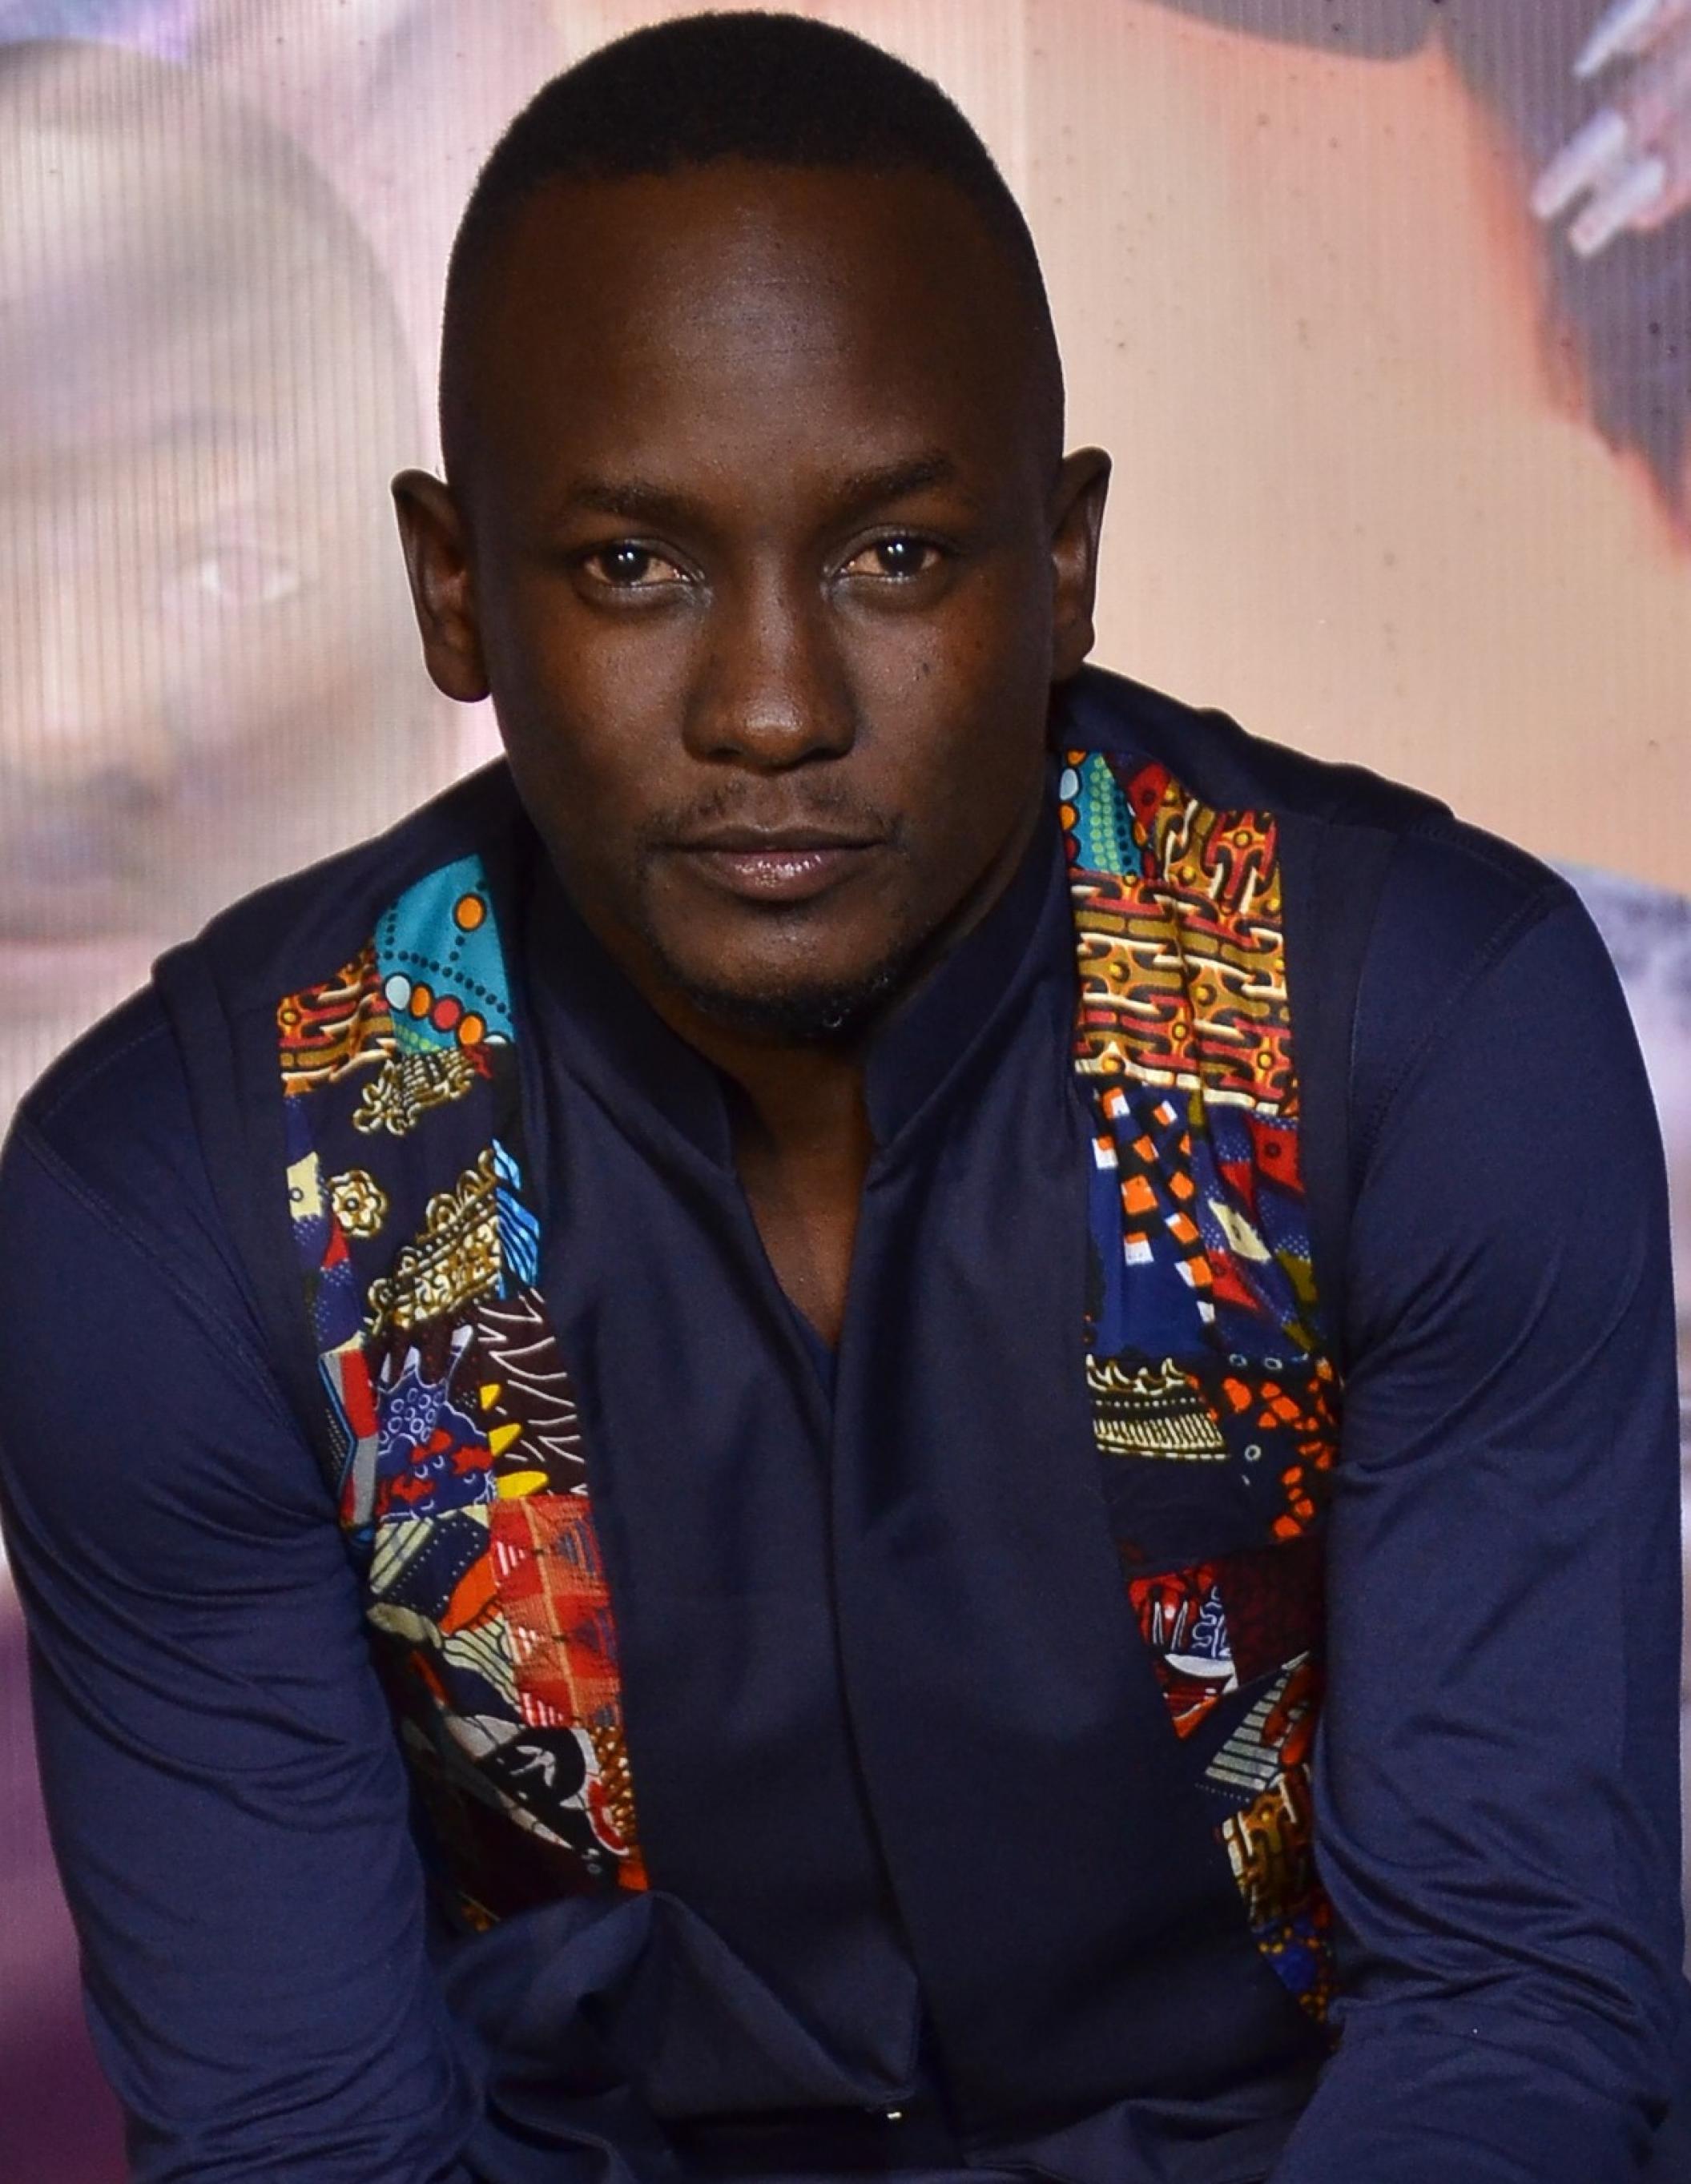 Abaas Mpindi schaut den Betrachtenden schräg von unten an. Er trägt ein dunkelblaues Hemd und eine Weste mit buntem, afrikanischem Muster.